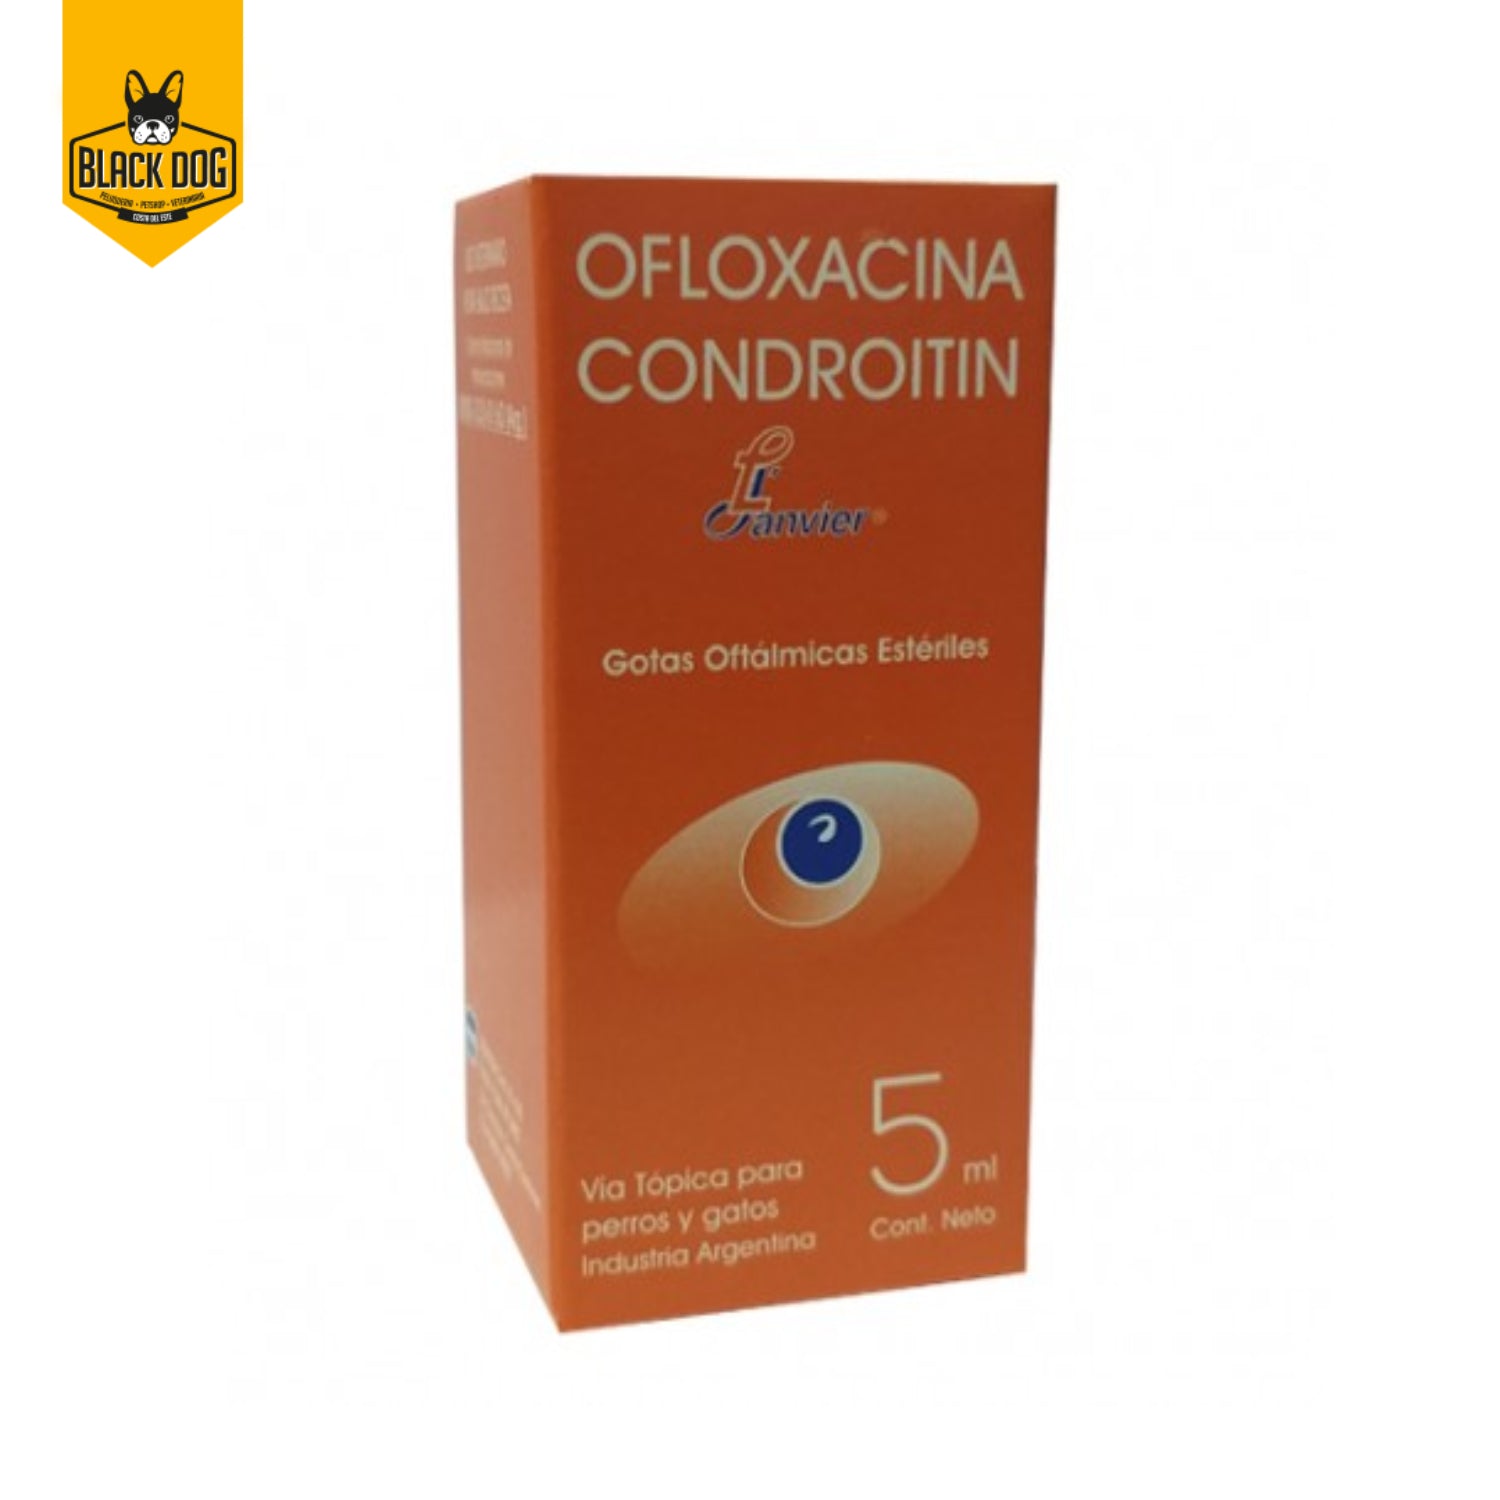 OFLOXACINA CONDROITIN | Gotas Oftalmicas | 5 ml - BlackDogPanama